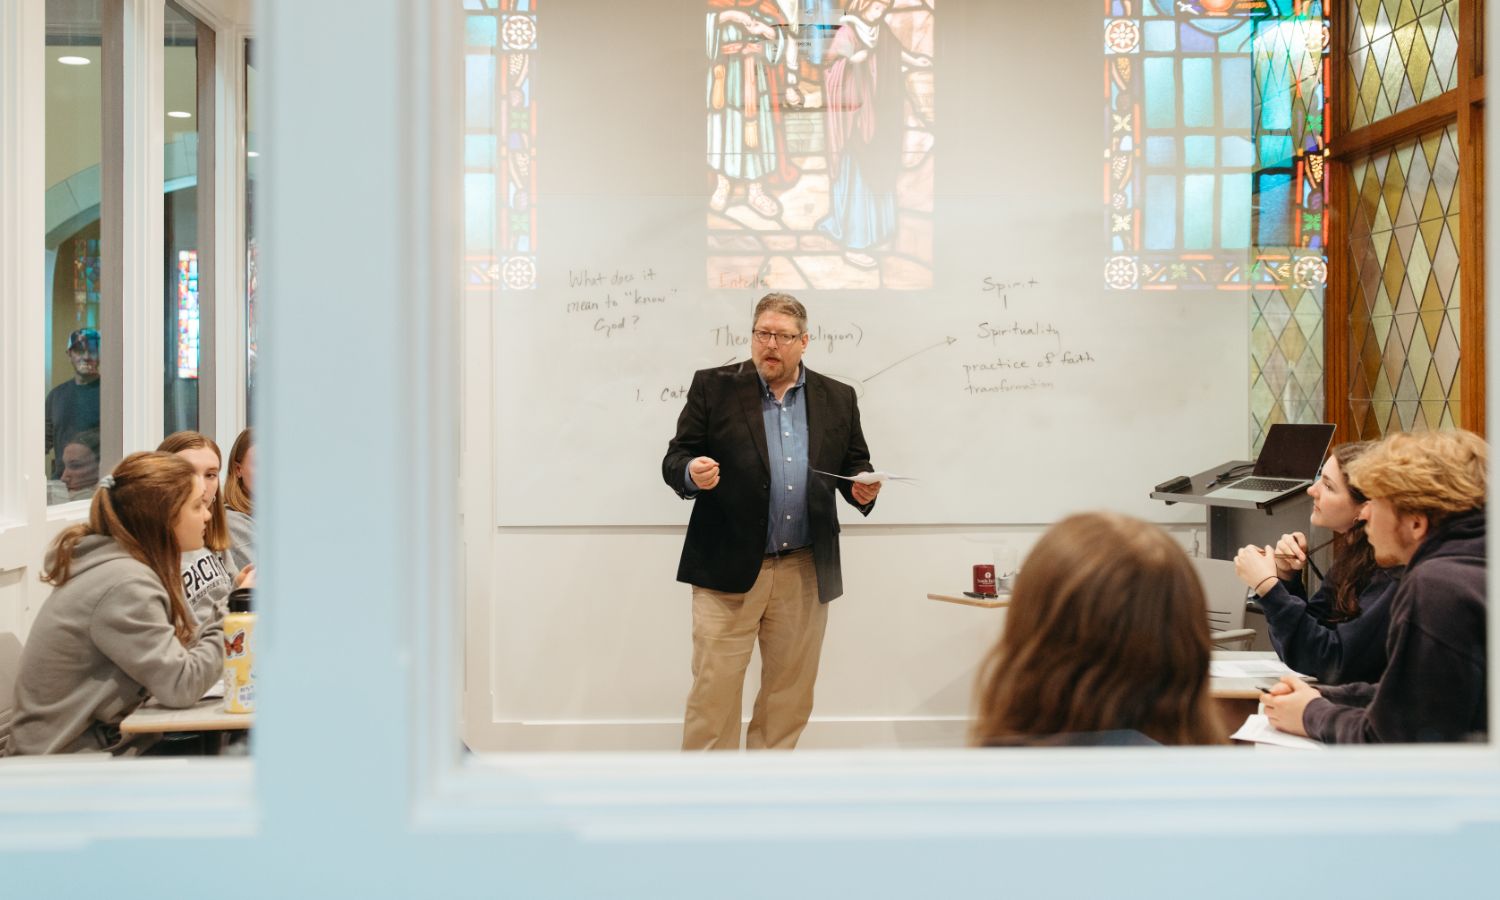 theology teacher leading classroom